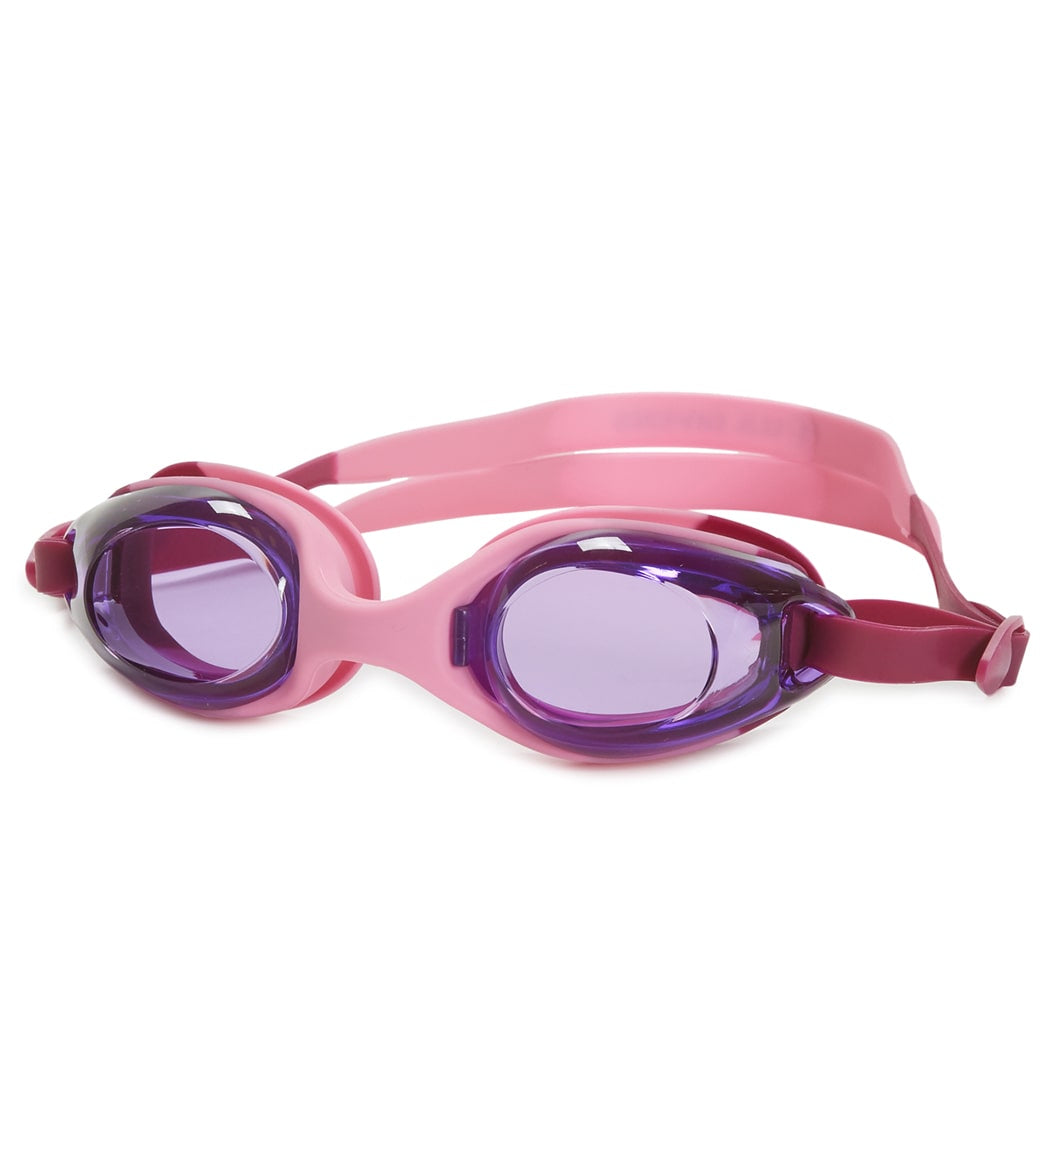 U.s. Divers Unisex Splash Jr Goggle - Purple/Pink - Swimoutlet.com